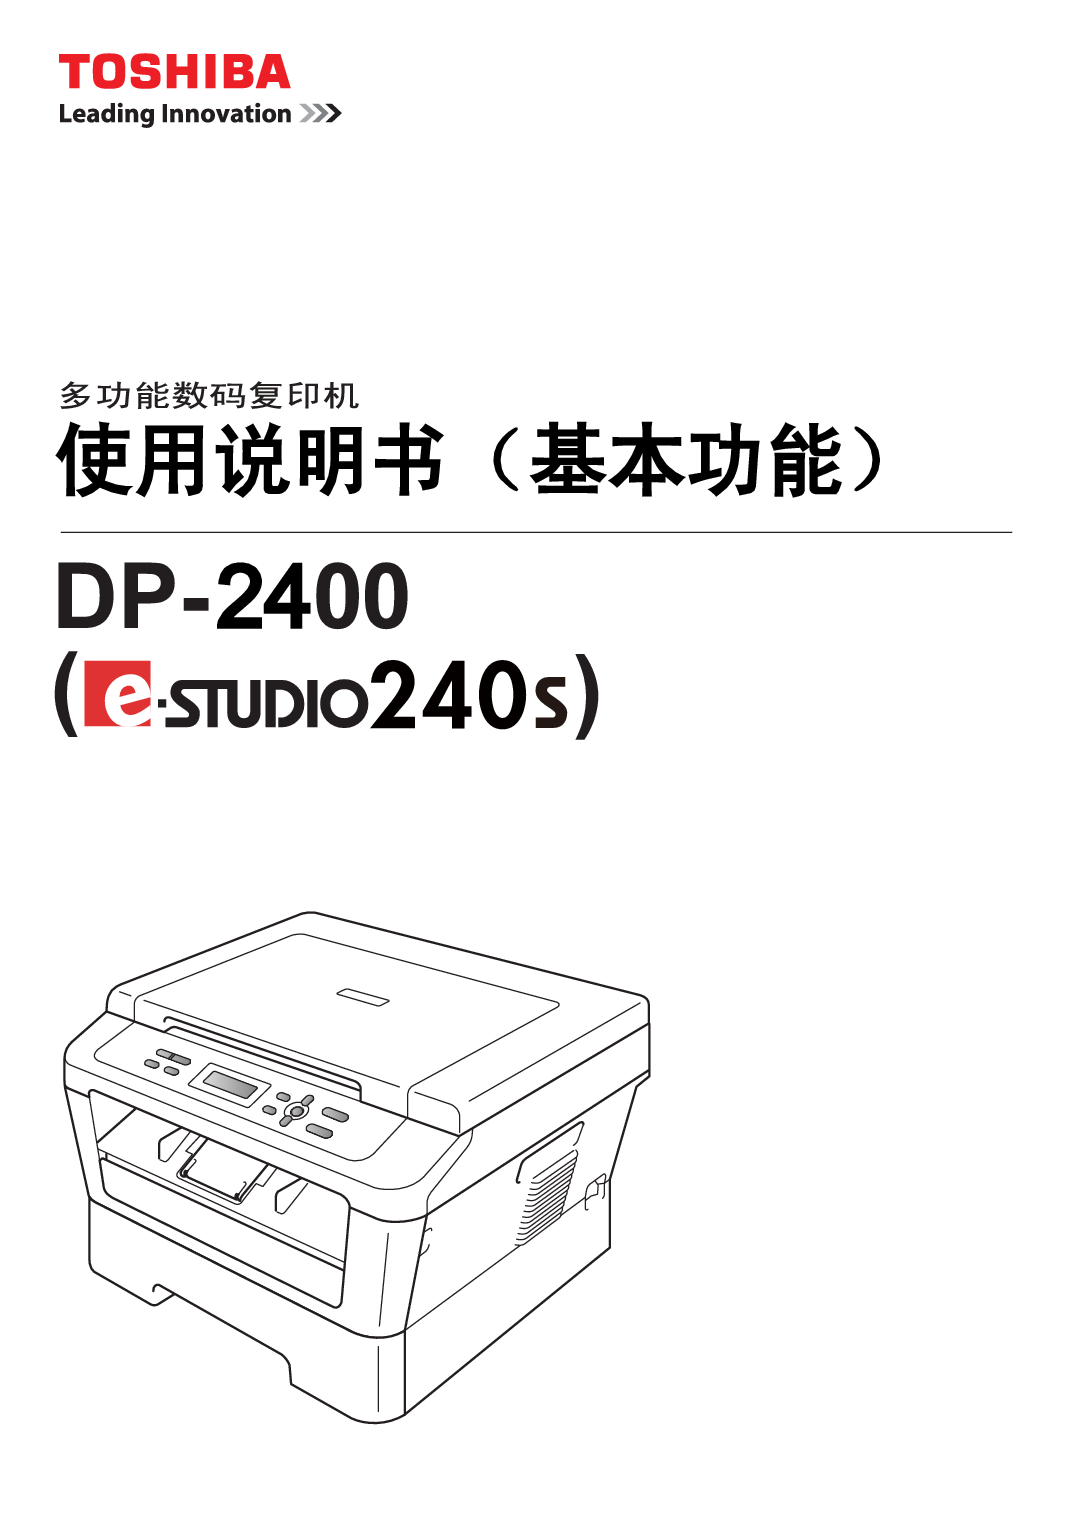 东芝 Toshiba DP-2400, e-STUDIO 240s 基础使用手册 封面